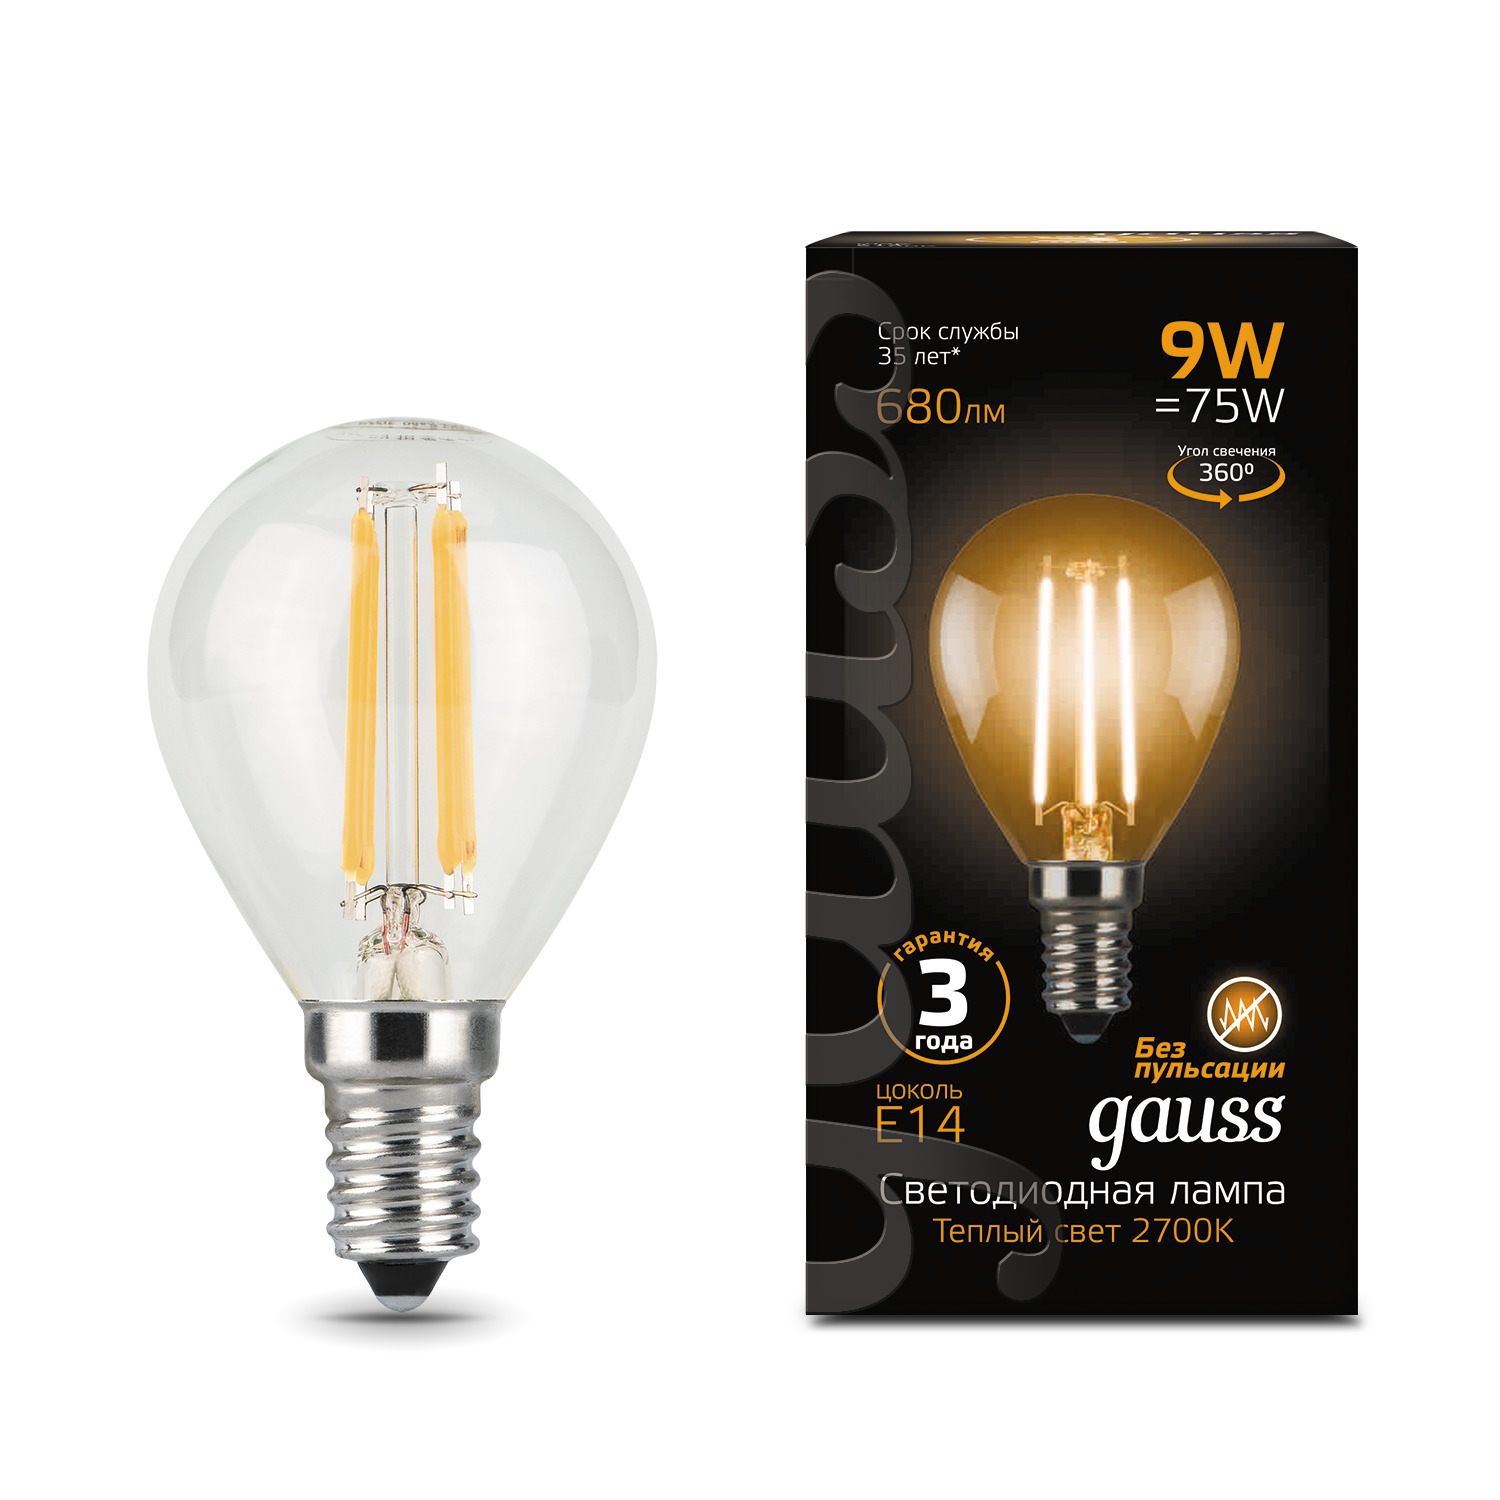 Лампа Gauss LED Filament Шар E14 9W 680lm 2700K 1/10/50 лампа gauss led filament свеча на ветру e14 9w 680lm 2700k 1 10 50